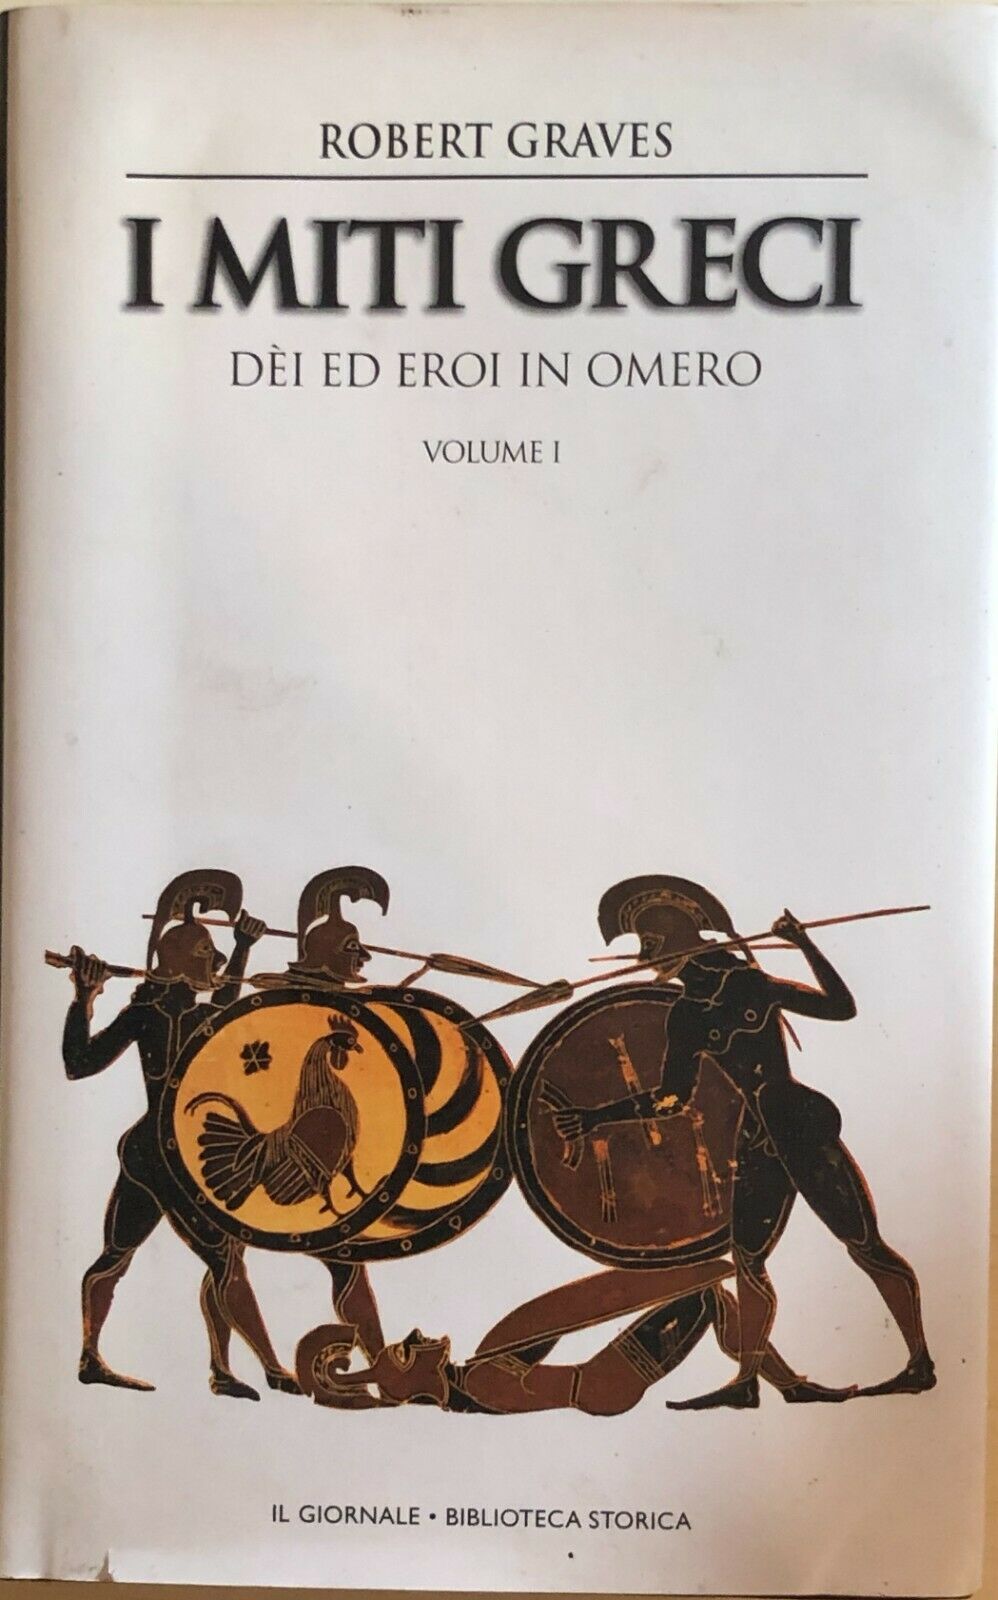 I miti greci, D?i ed eroi in Omero Vol.I di Robert Graves, Il Giornale